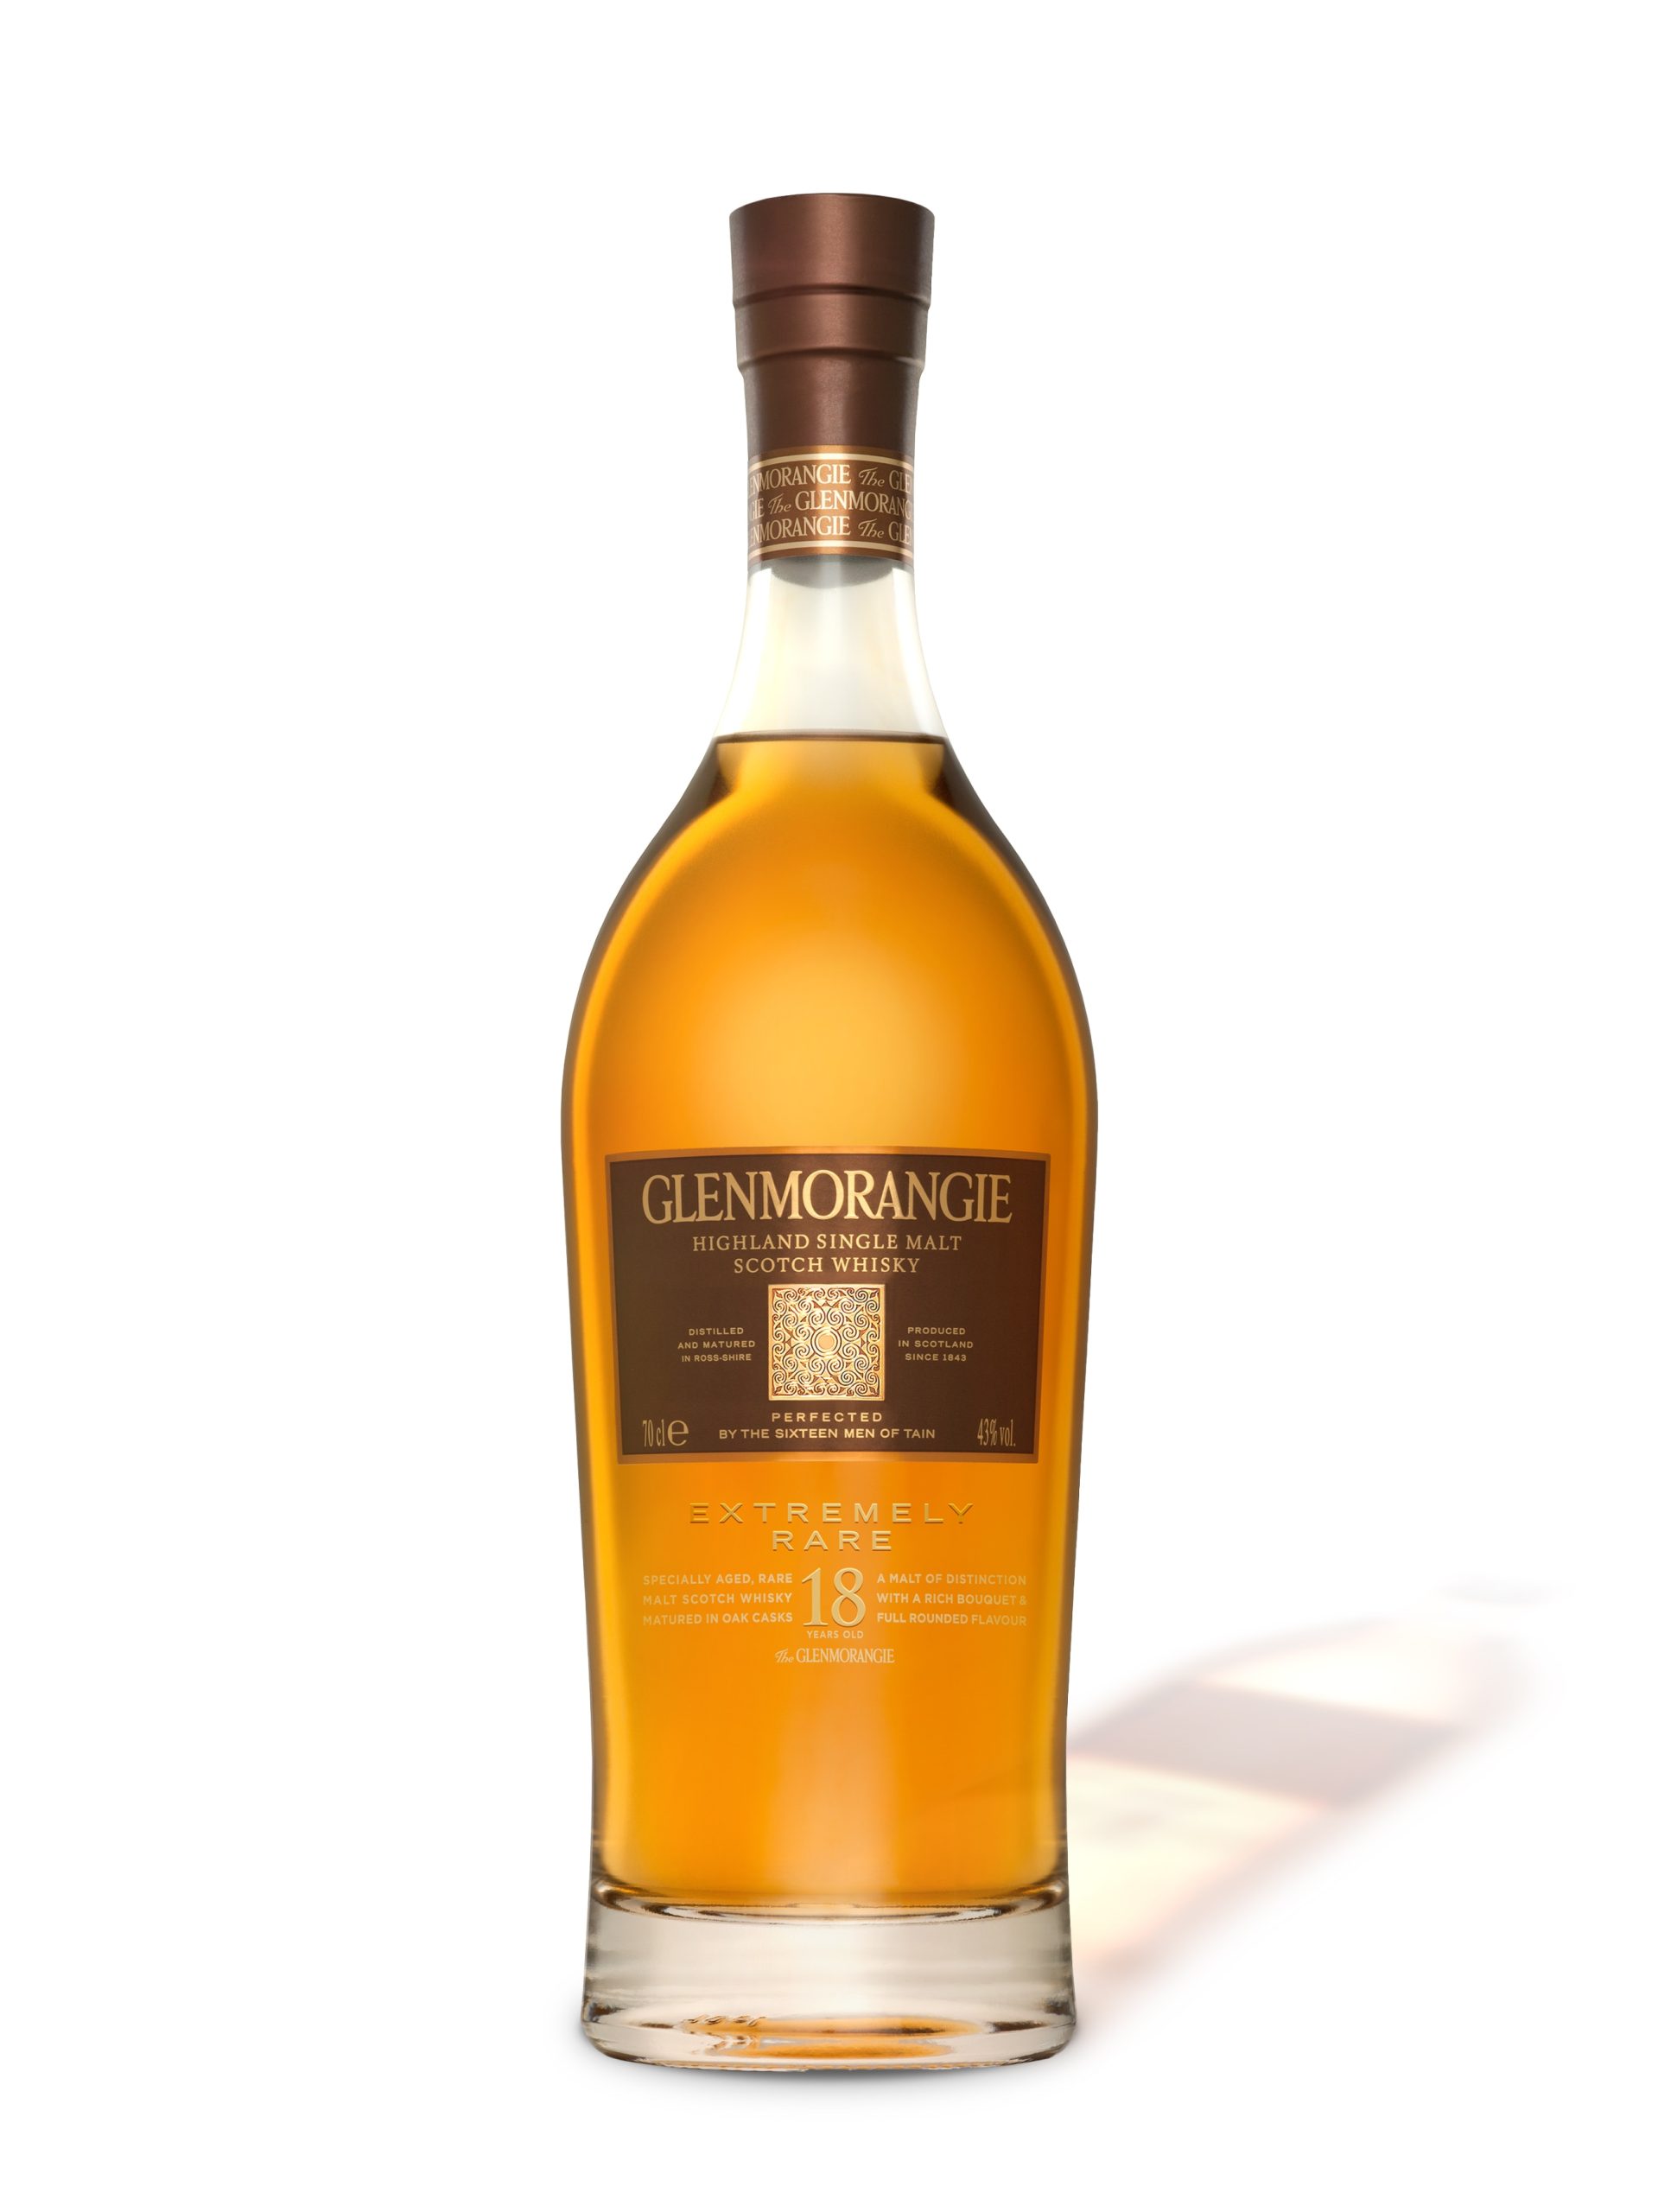 Glenmorangie The Original 10Yr Bourbon Cask Matured Single Malt Scotch  Whisky 750ml